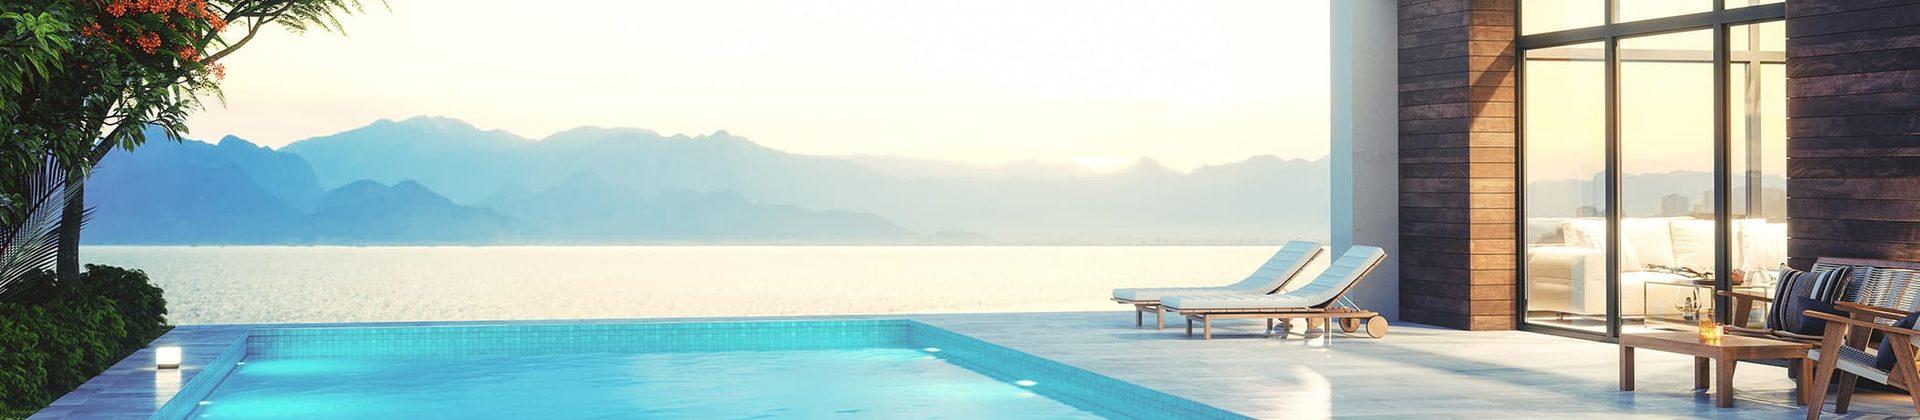 Ferienhaus mit Pool auf Teneriffa - TUI